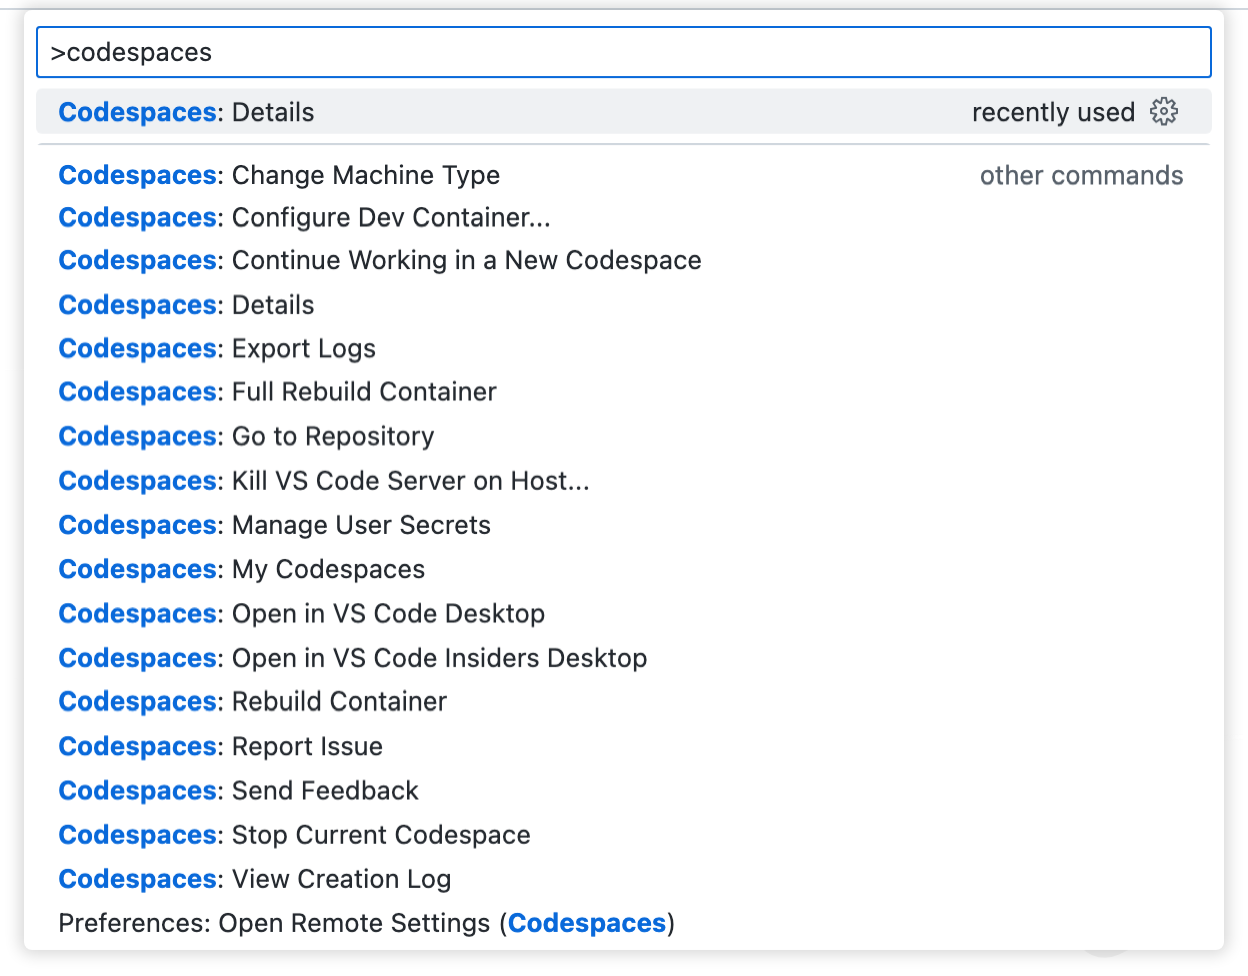 Captura de tela de uma lista com todos os comandos relacionados aos GitHub Codespaces